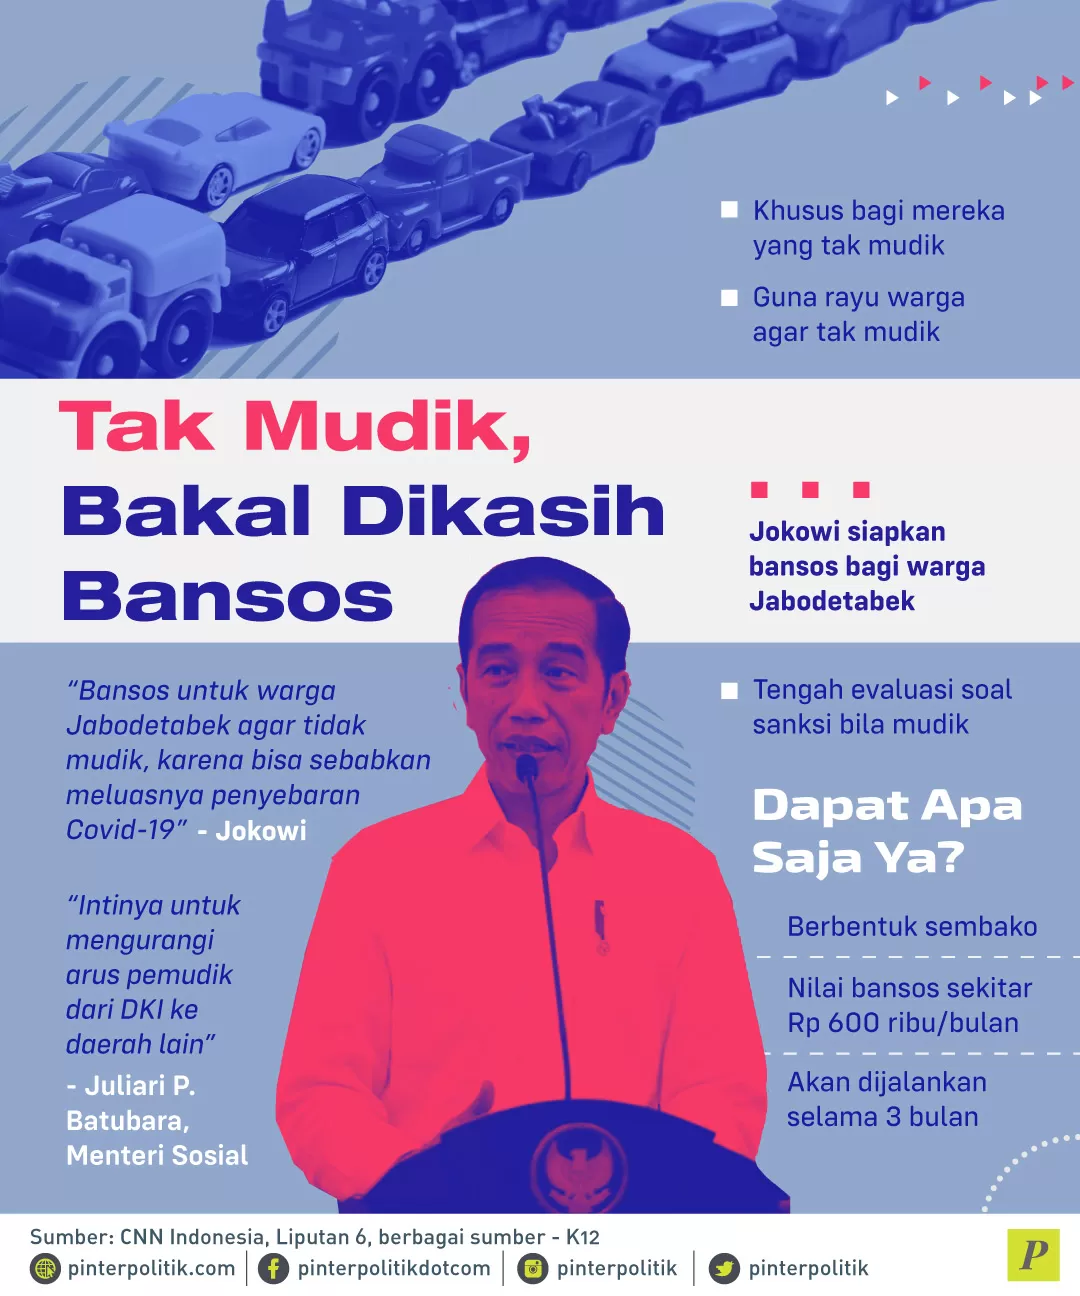 Jokowi siapkan bansos bagi warga jabodetabek